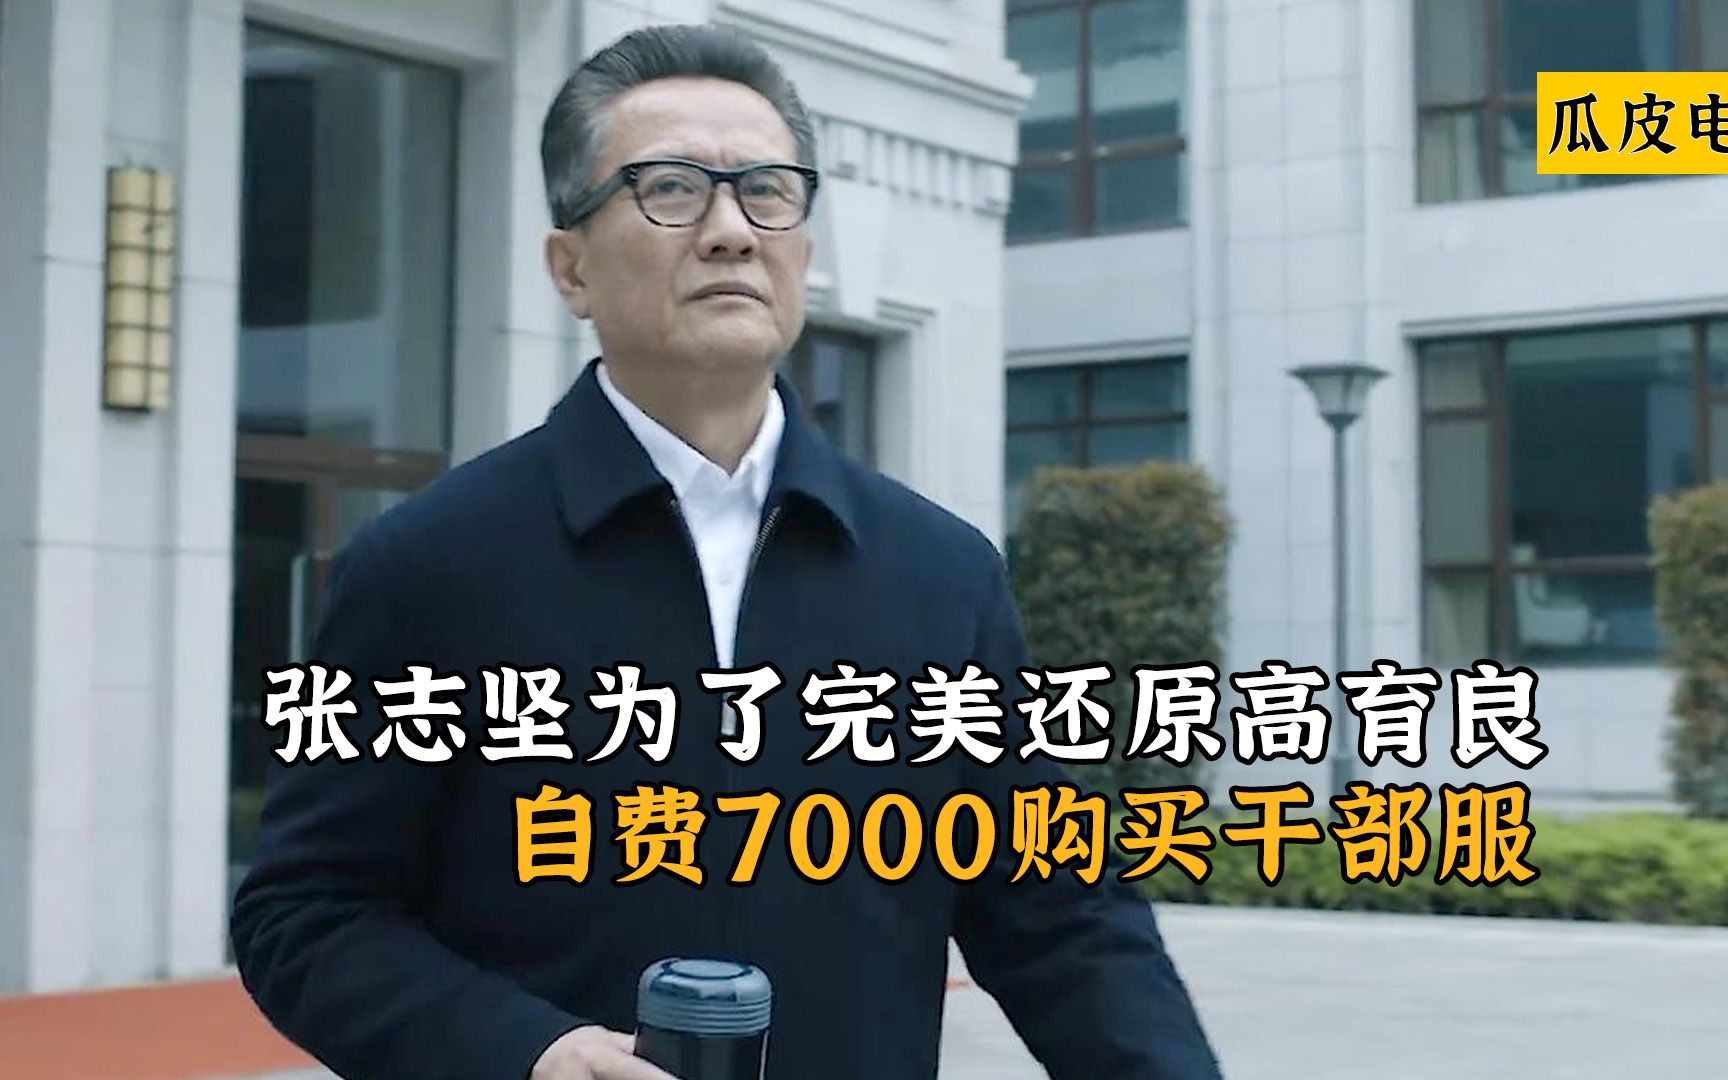 人民的名义：张志坚为了完美还原高育良，自费7000购买干部服